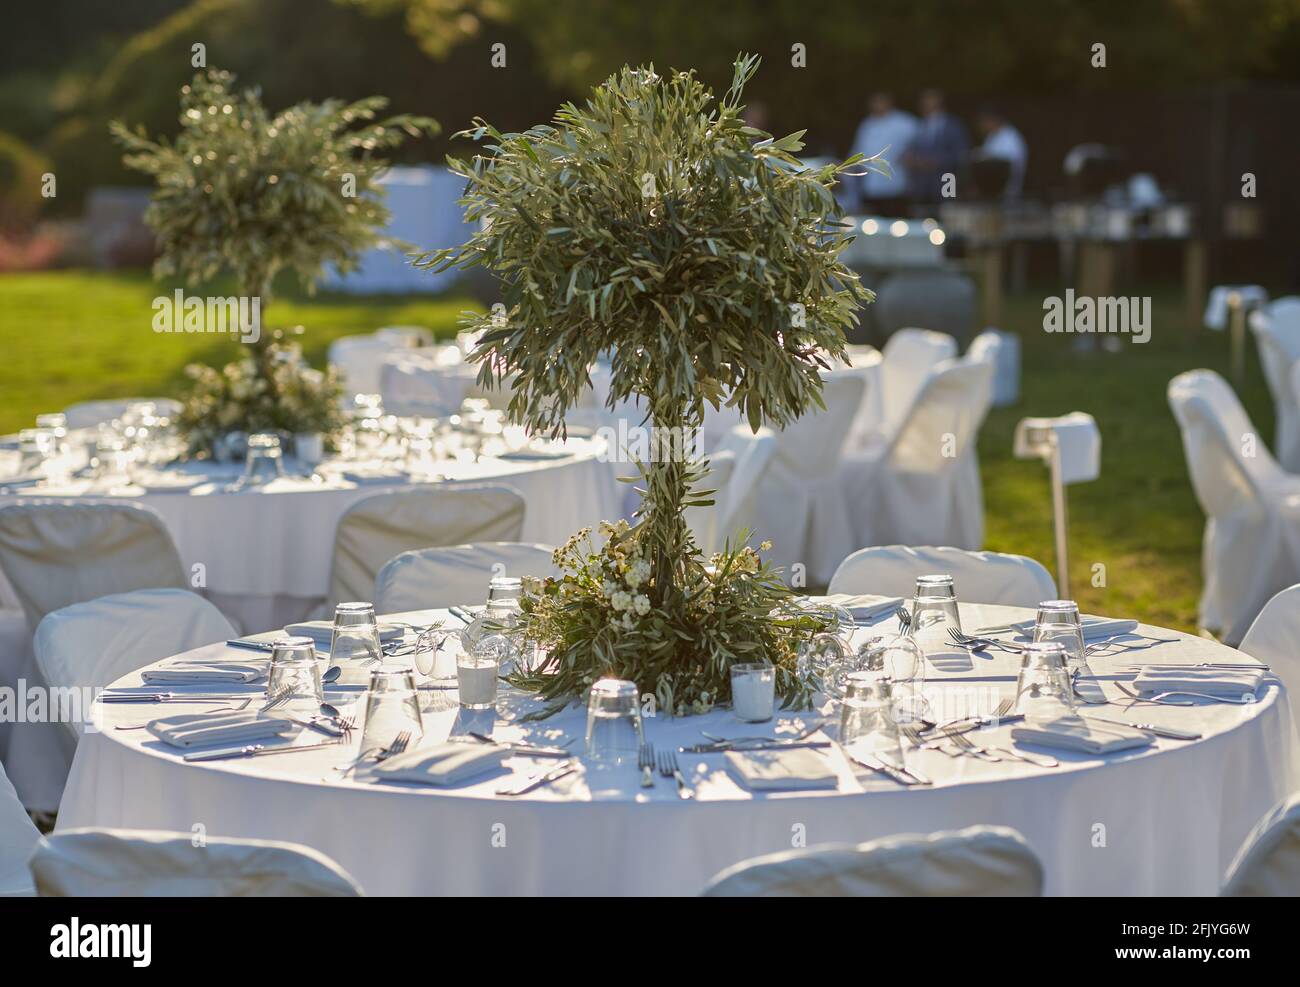 Hochzeit. Bankett. Die Stühle und runden Tisch für die Gäste, serviert mit Besteck, kleinen Olivenbaum und mit einer weißen Tischdecke bedeckt Stockfoto